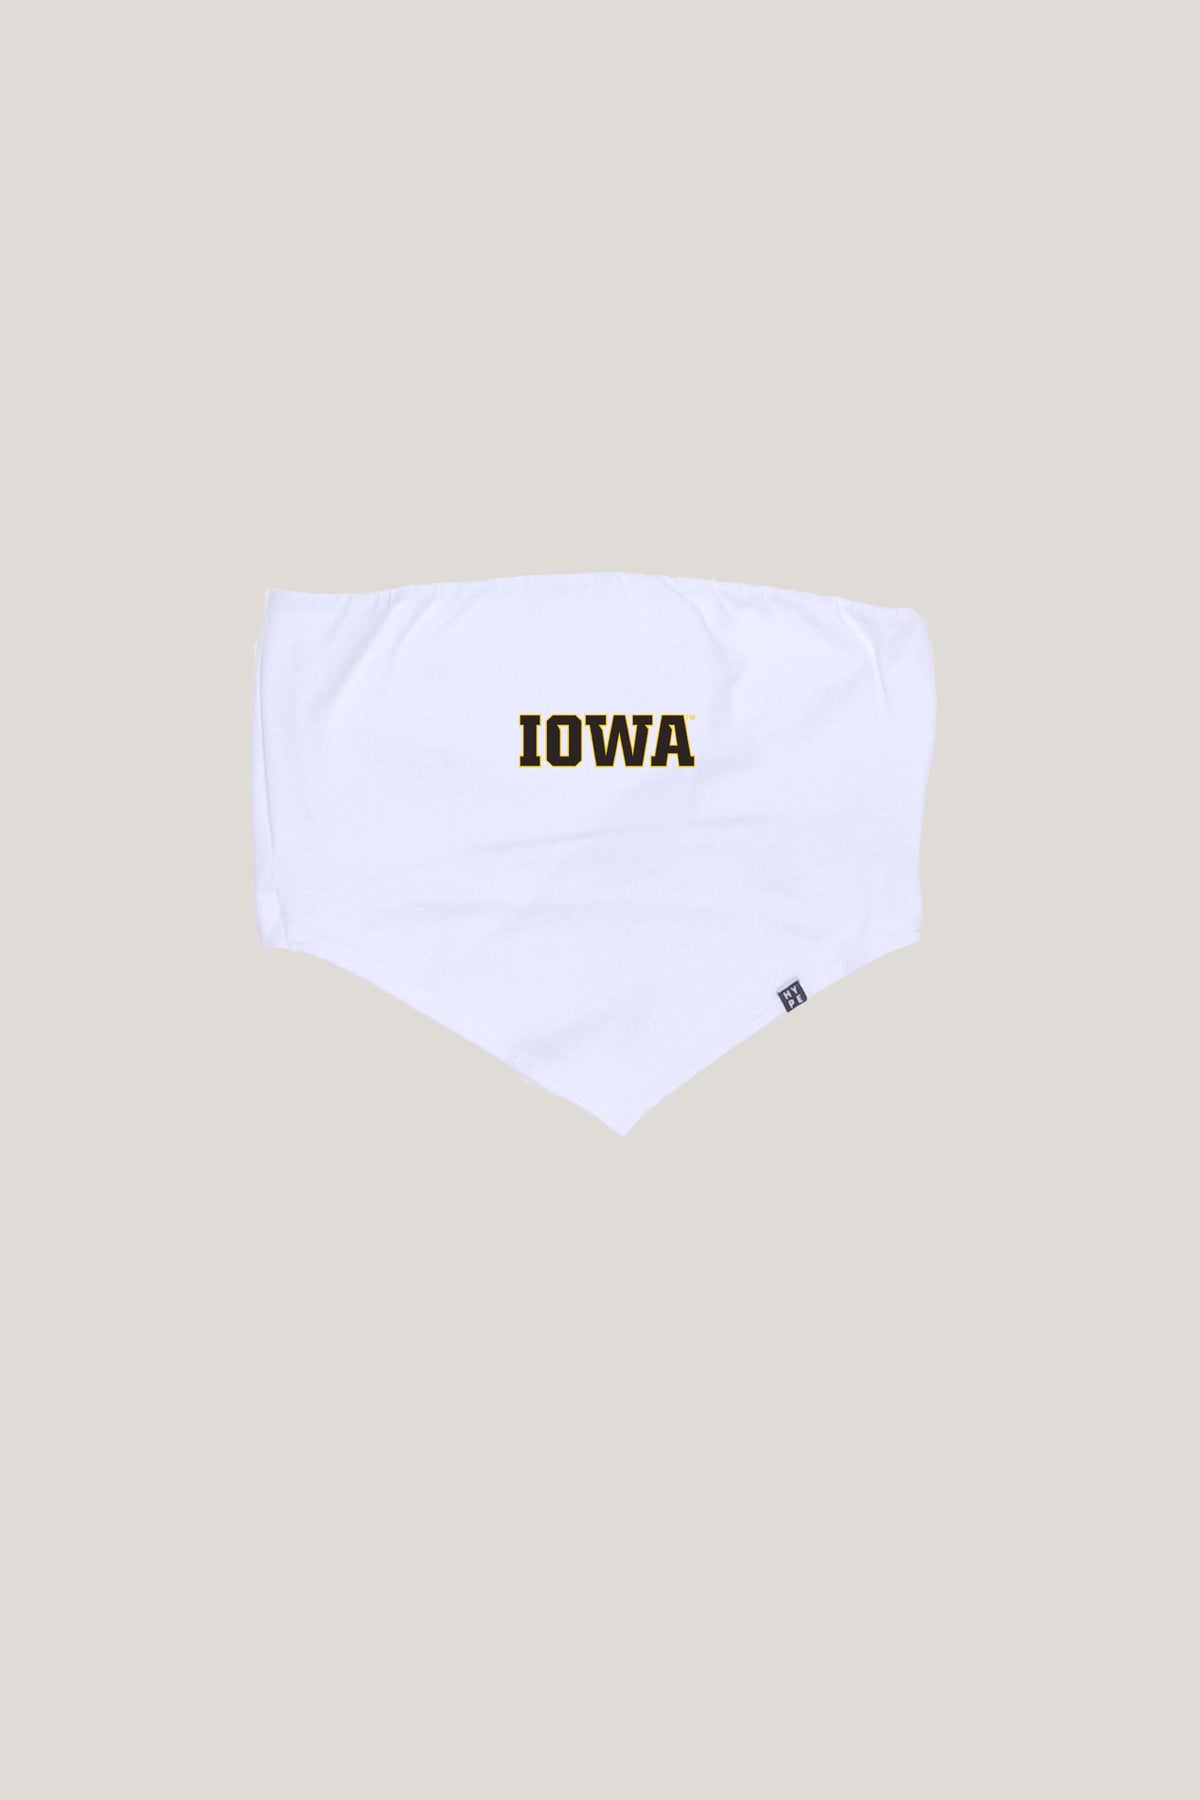 Iowa Bandana Top